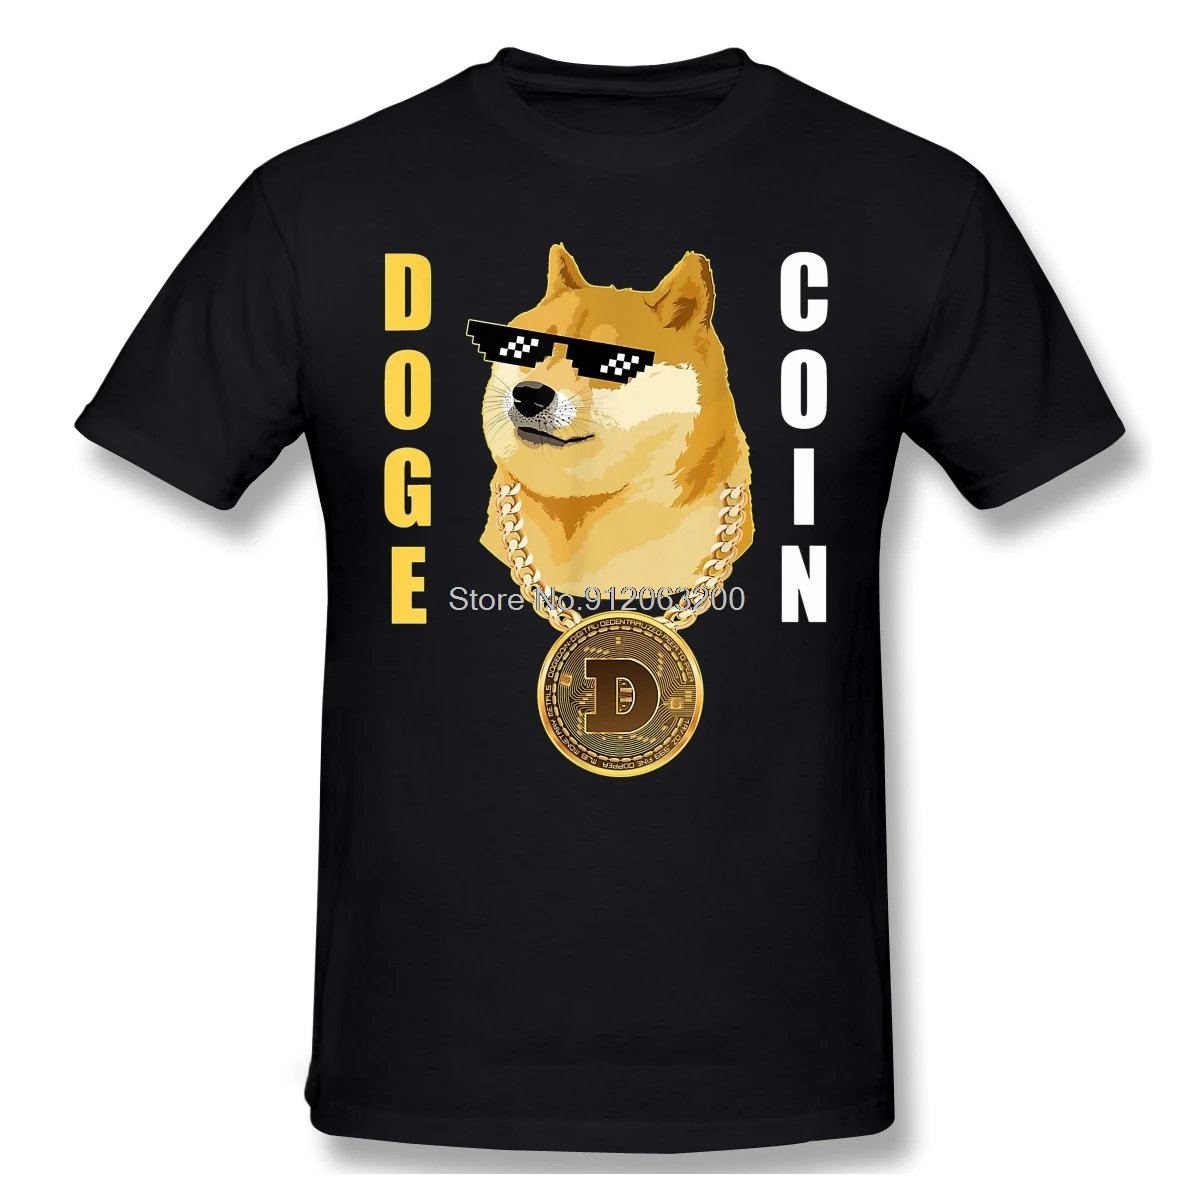 

Рубашка Doge Gansta для криптовалюты, Мужская футболка с коротким рукавом, Doge Dogecoin, Биткоин, цифровая валюта, Повседневная Свободная футболка